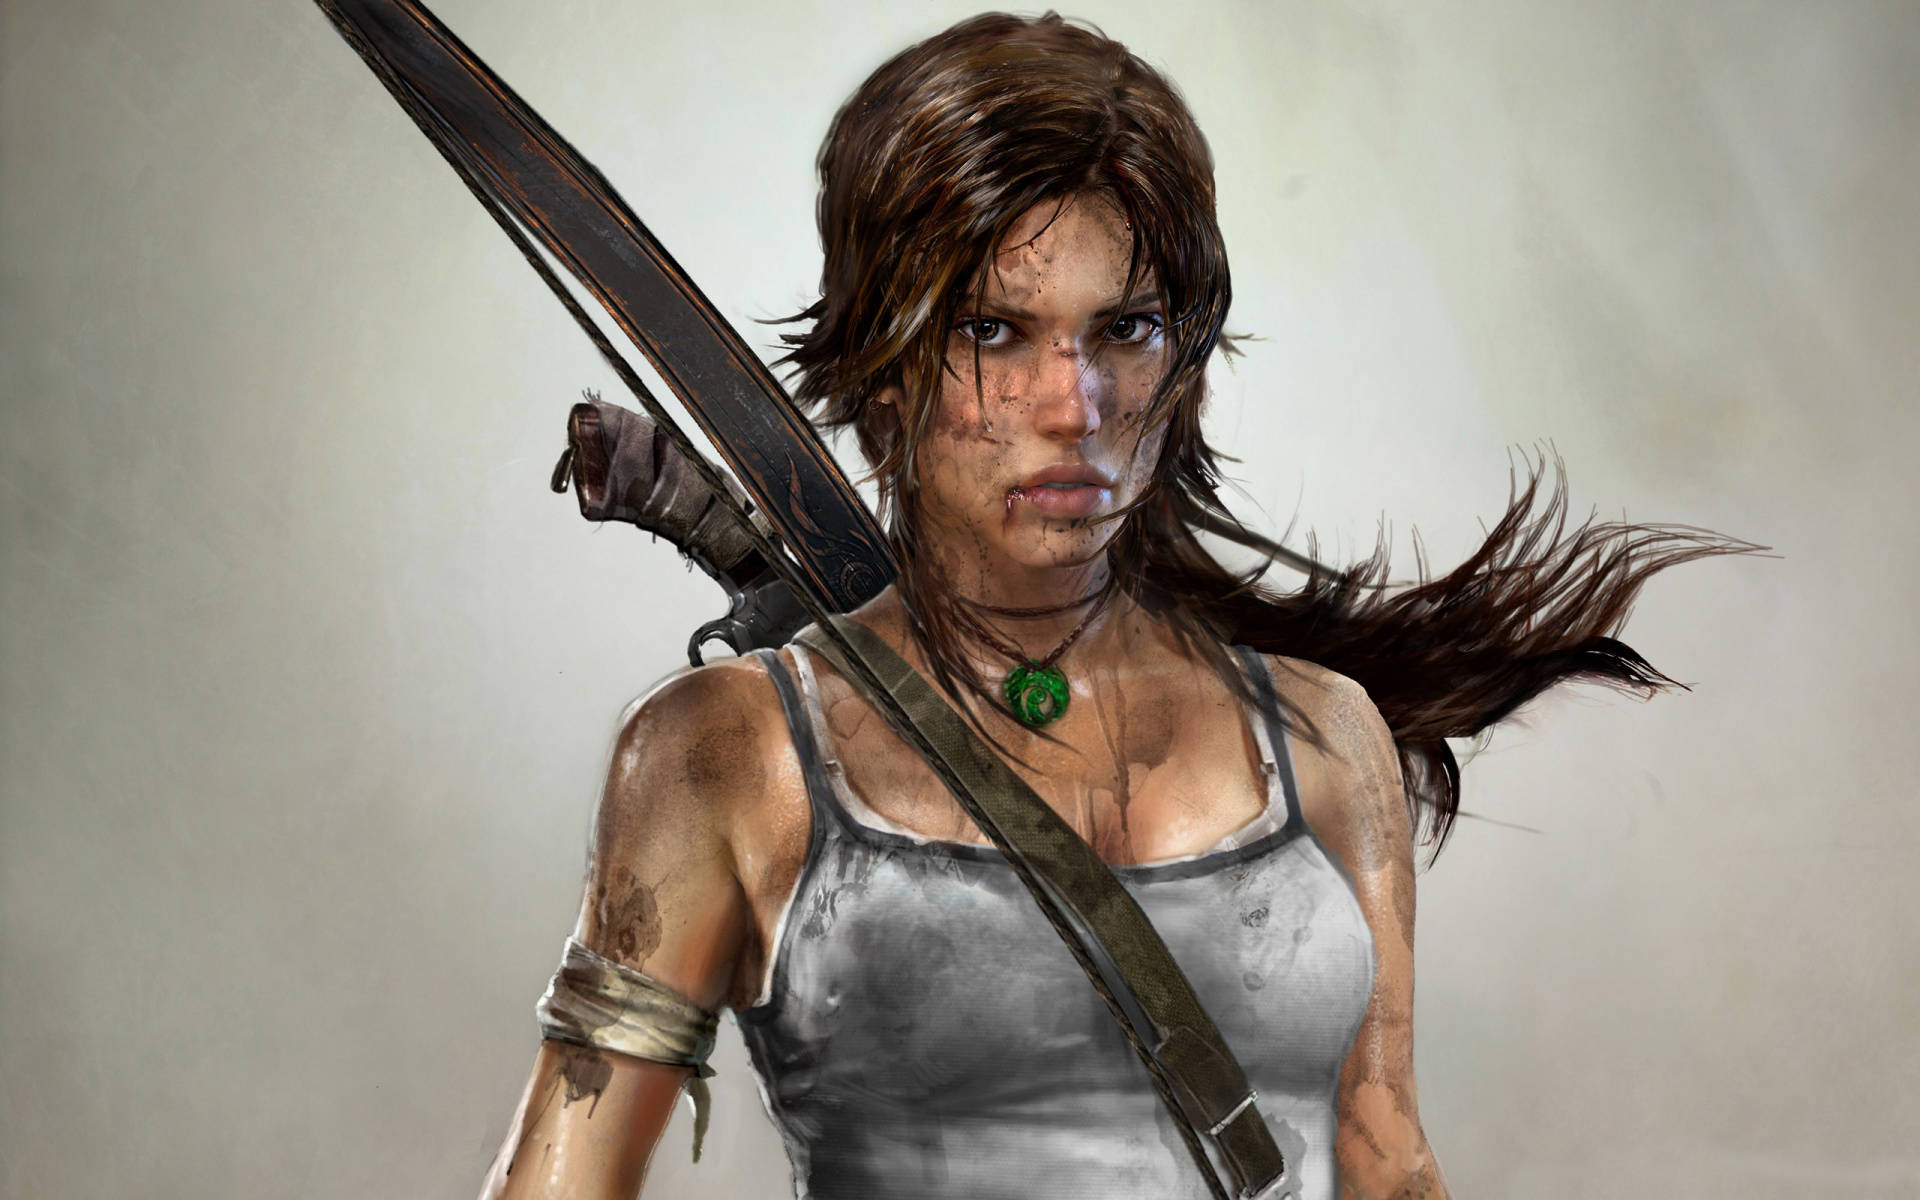 Følg Lara Croft på hendes seneste jagt på skattejagt og fare i Tomb Raider 9. Wallpaper